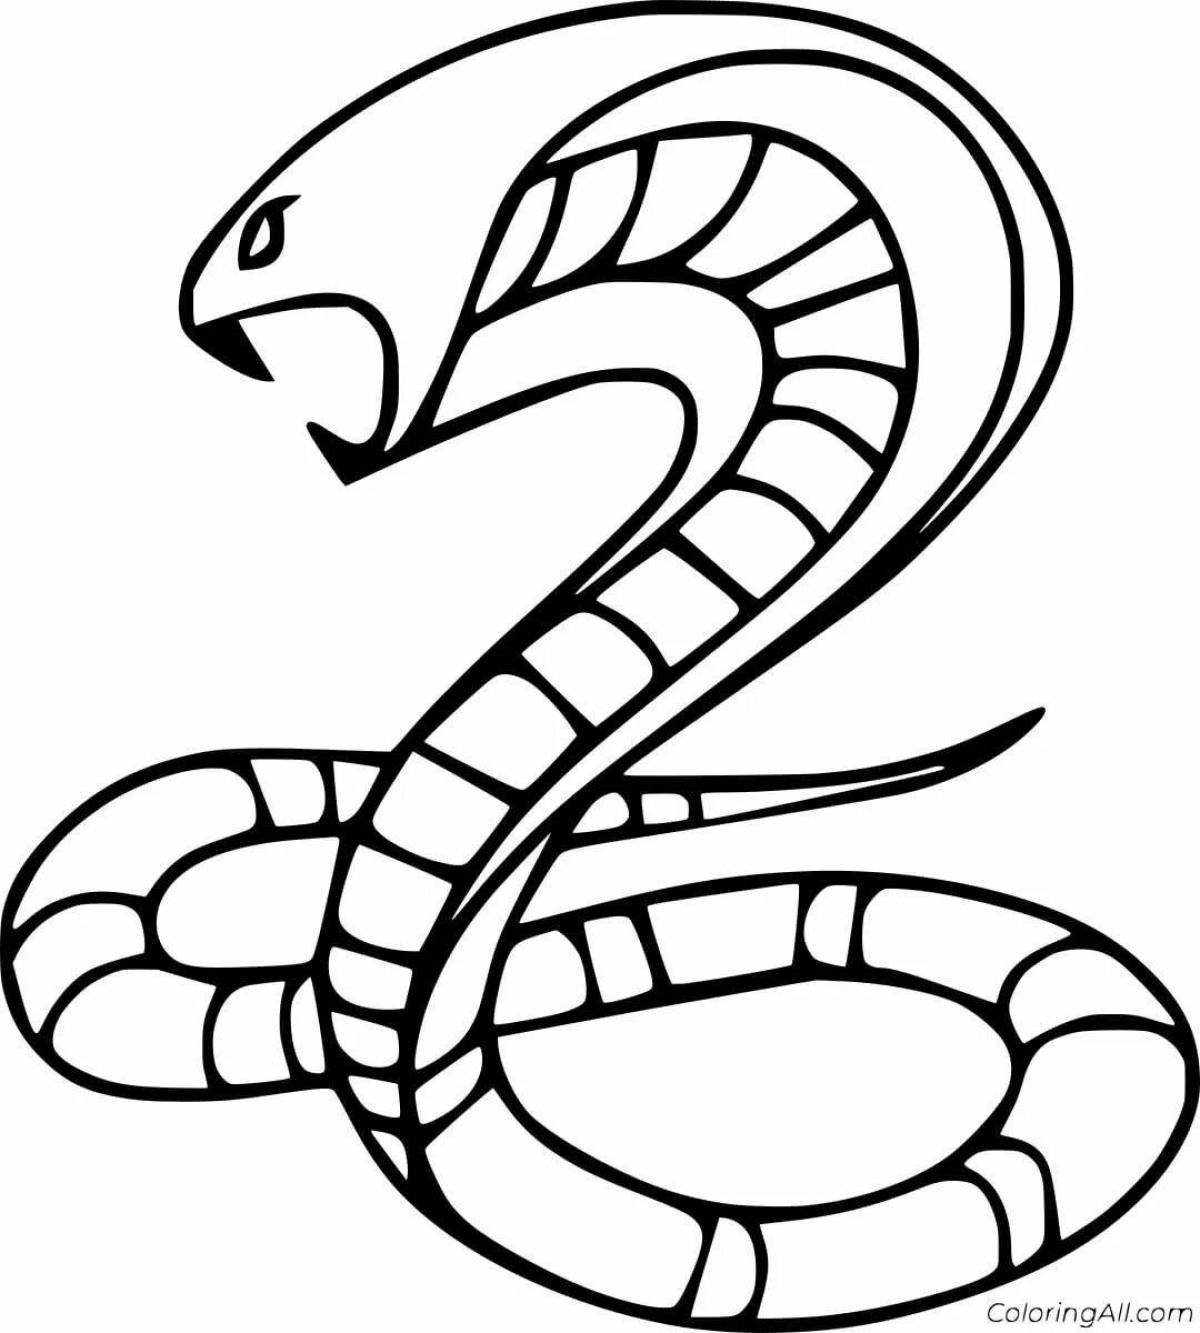 Раскраски змей распечатать. Змея Кобра Королевская. Раскраска змеи Королевская Кобра. Змея раскраска. Раскраска змеи для детей.